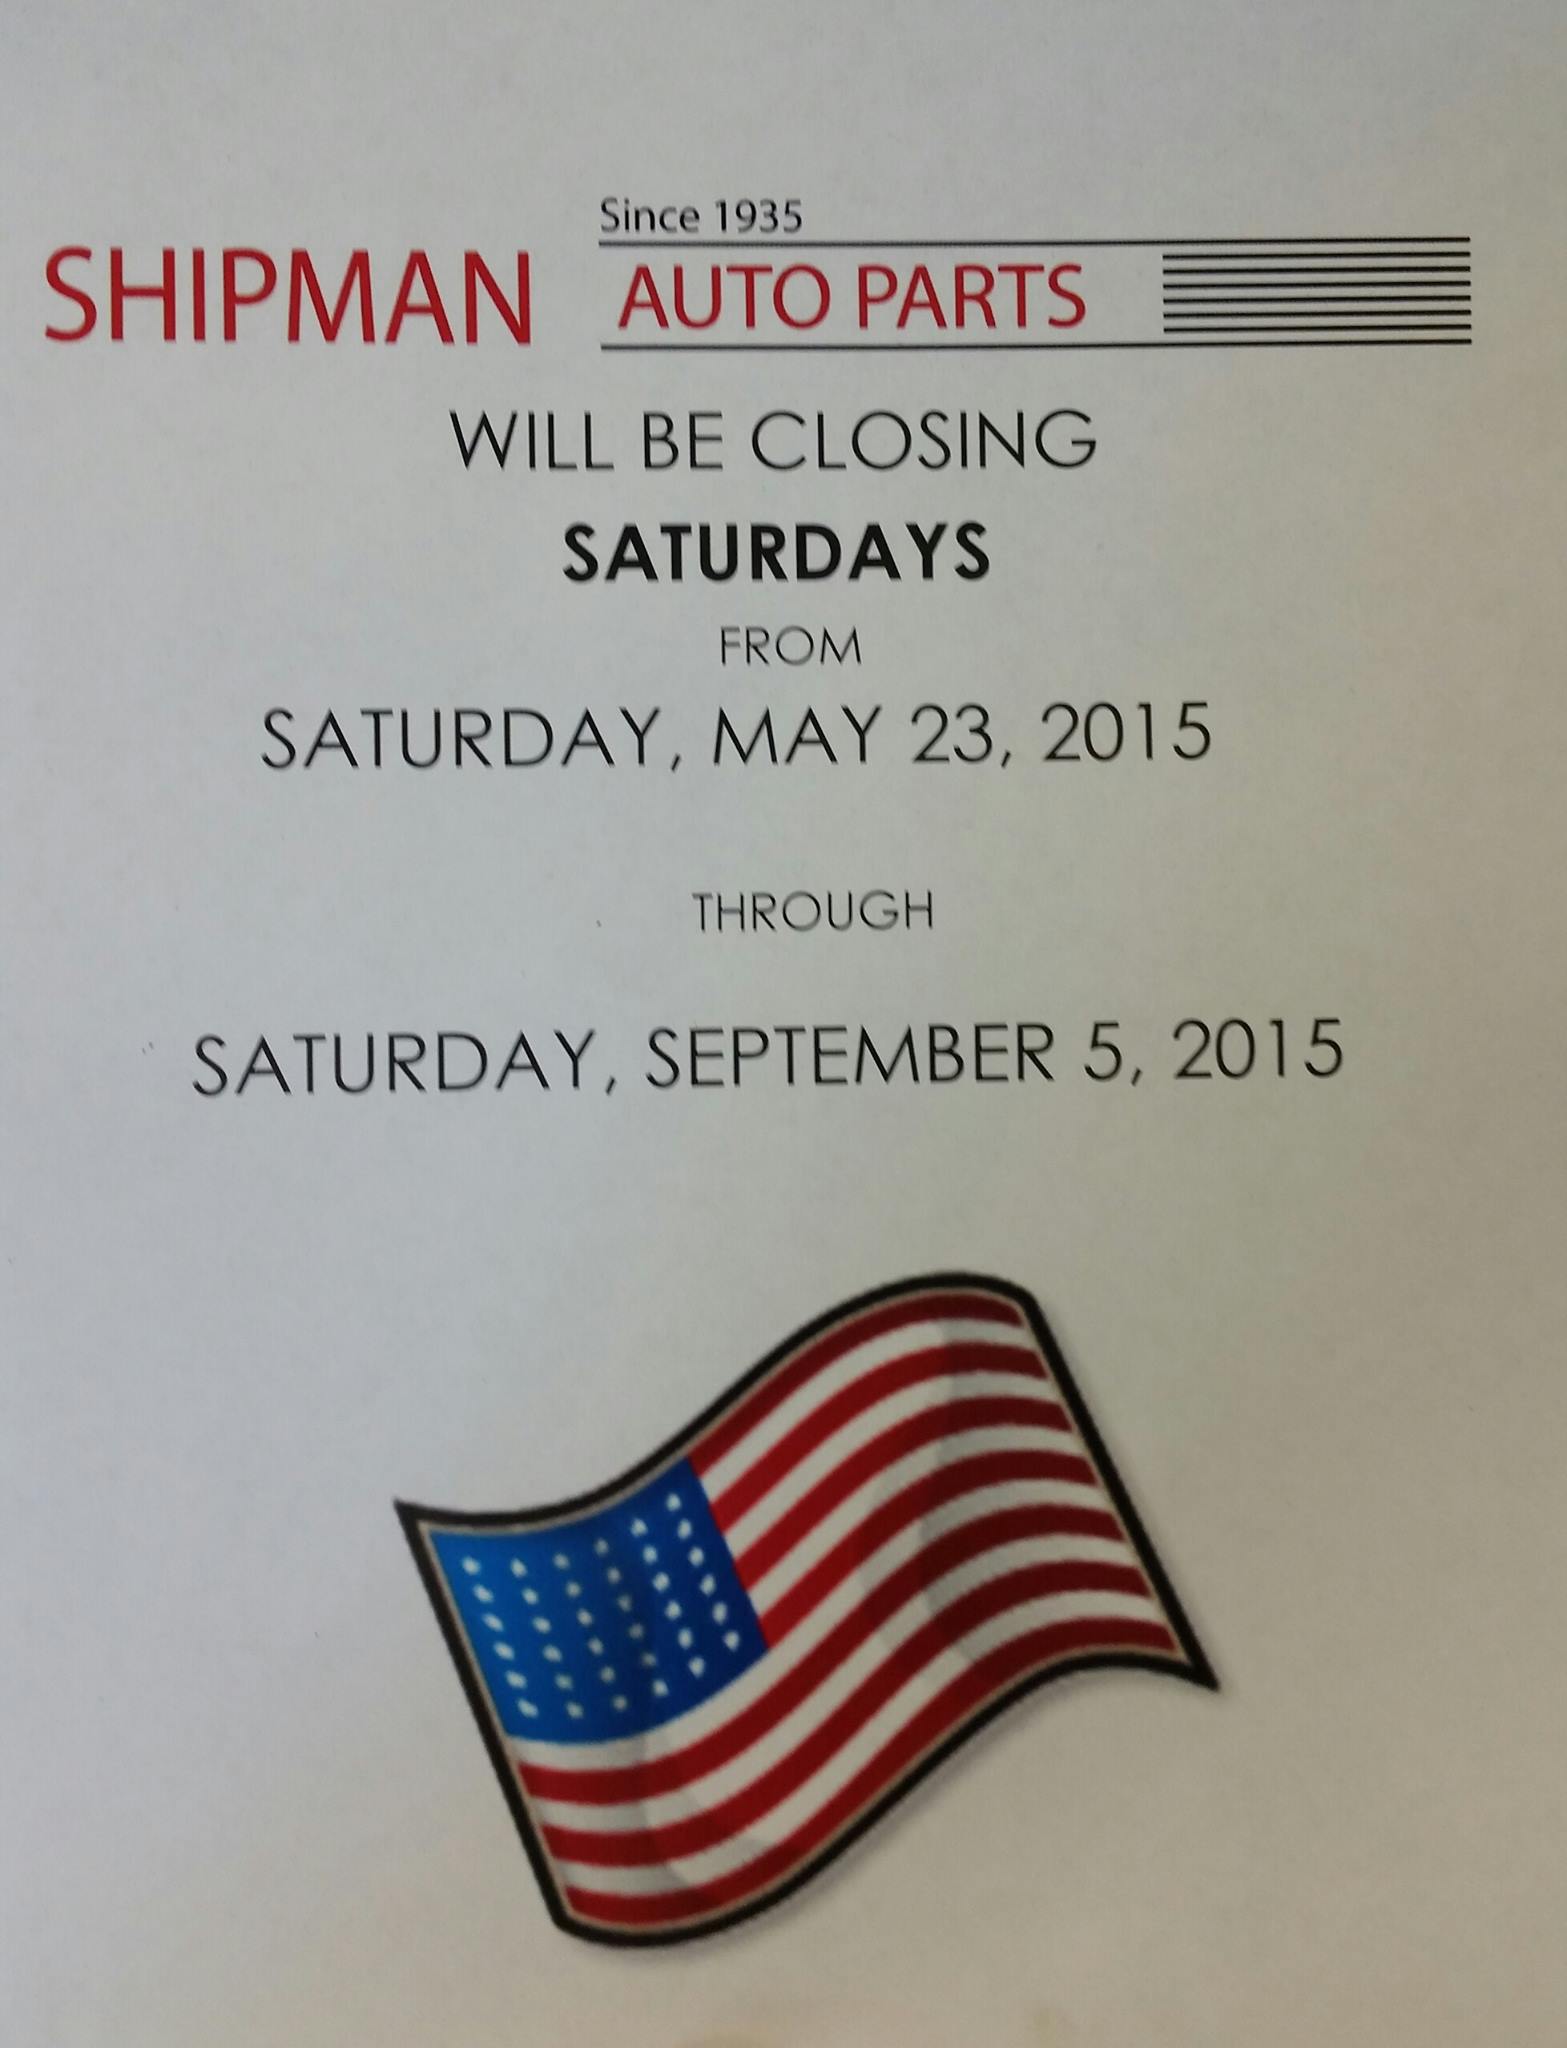 Shipman Auto Parts